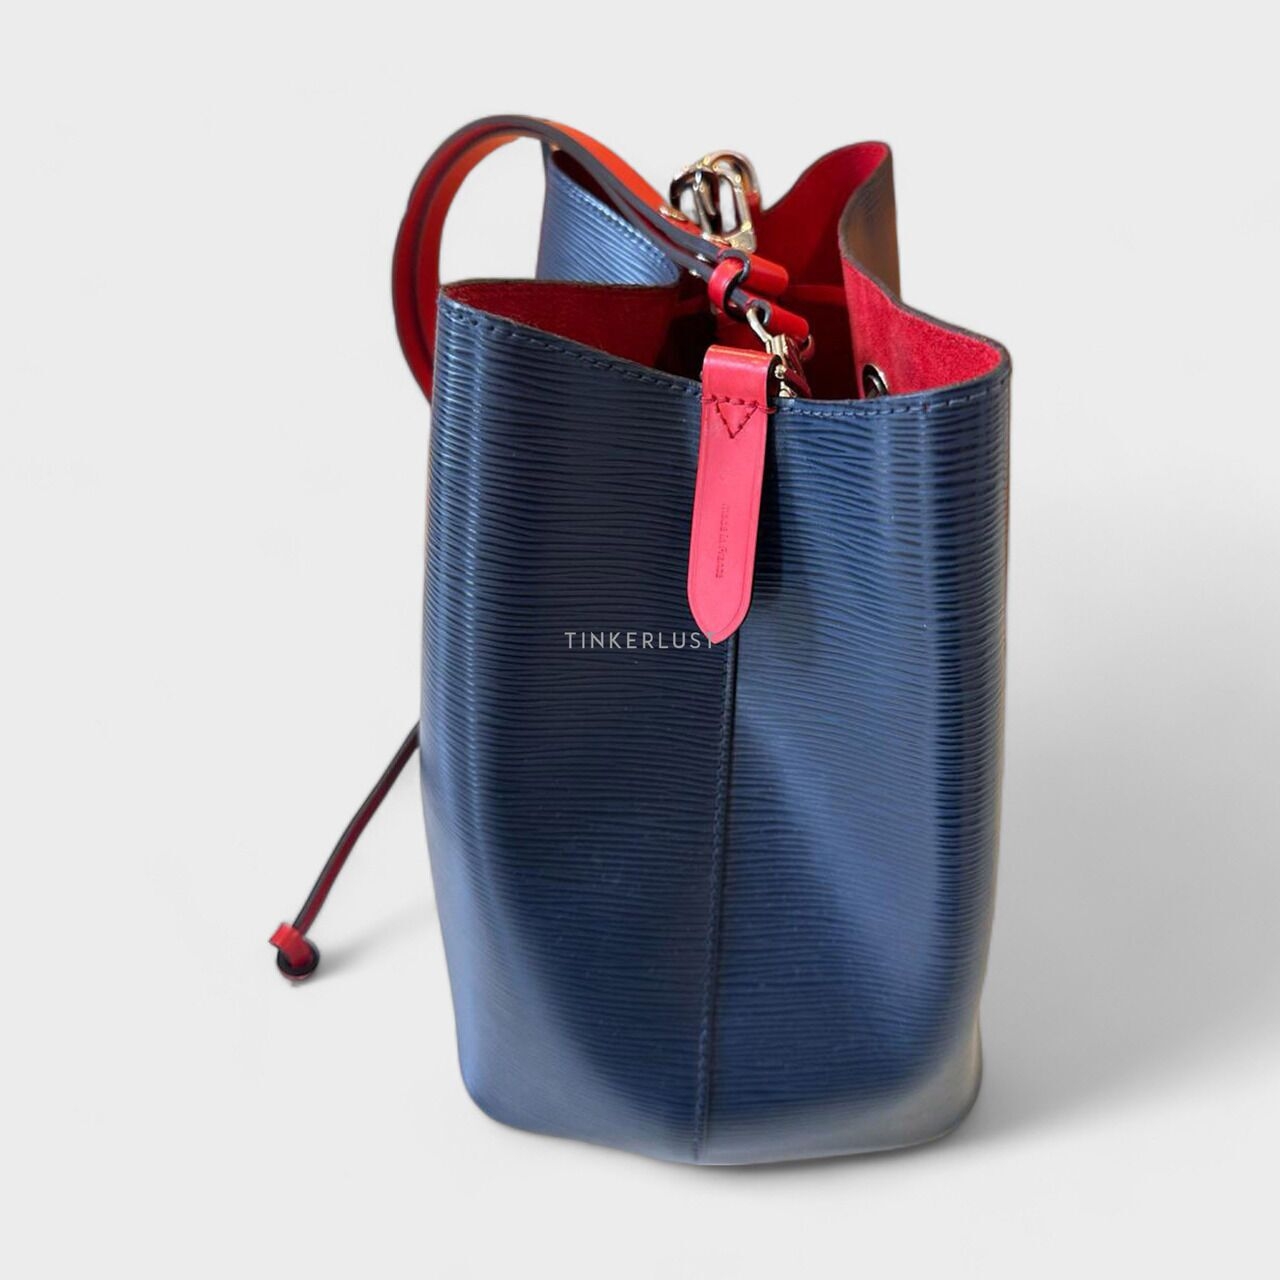 Louis Vuitton Noe Epi Leather Navy & Red Shoulder Bag